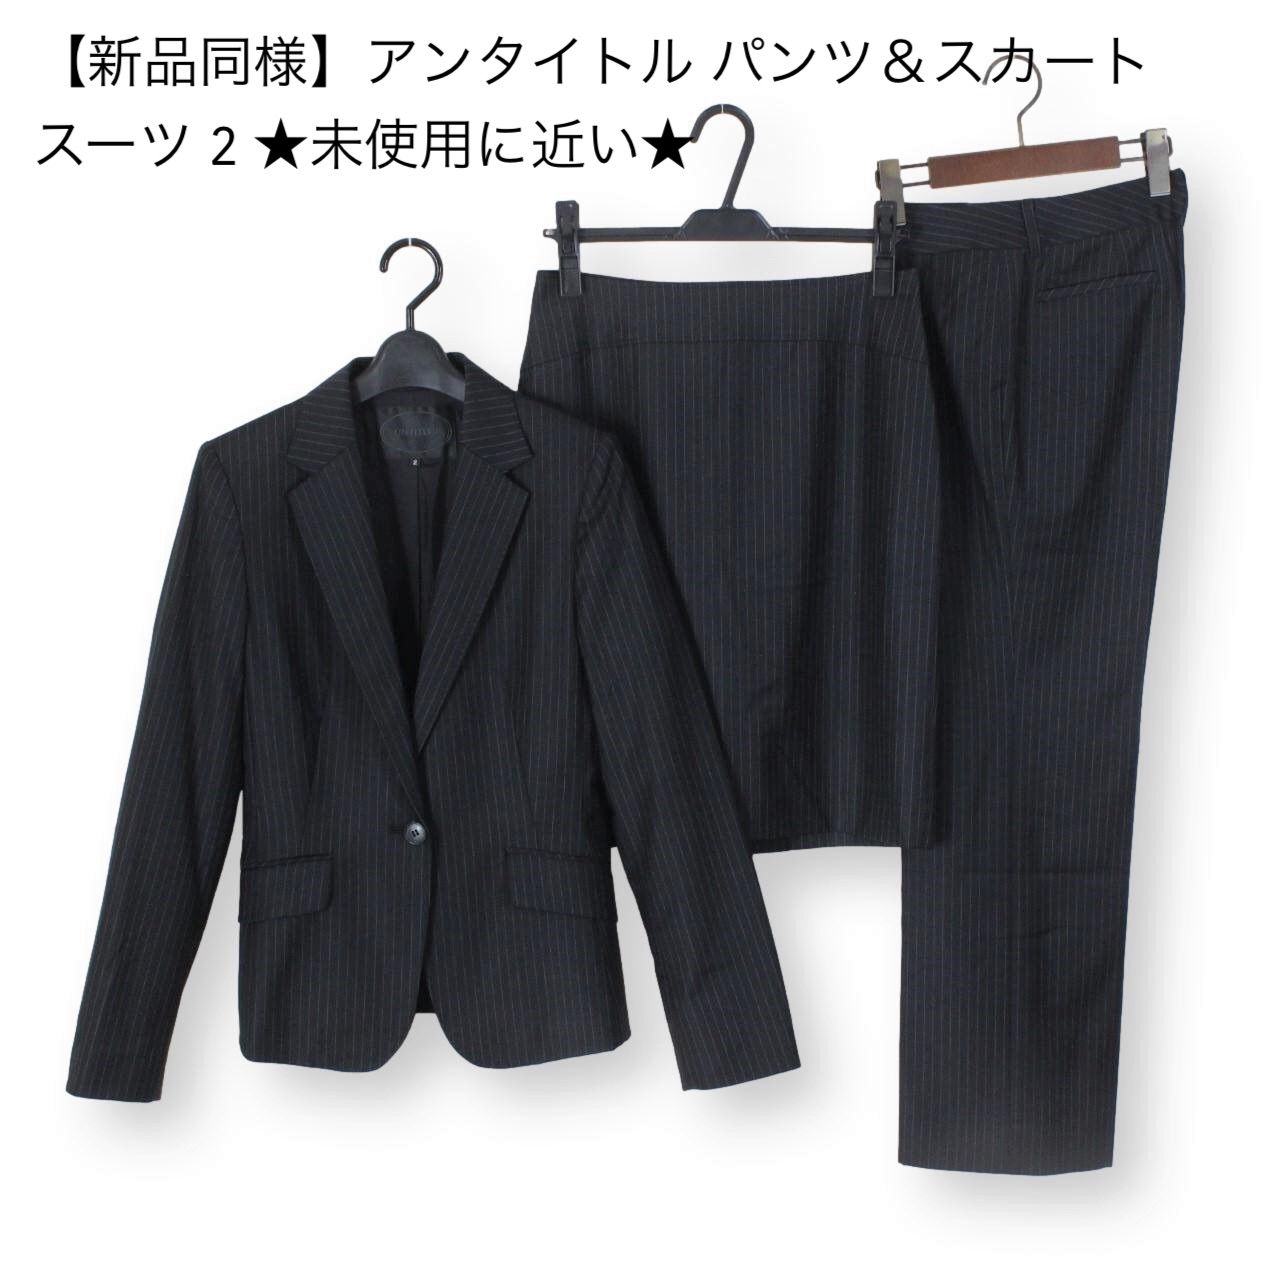 unaltd アンタイトル スーツ 黒 サイズ2 Ｍ-